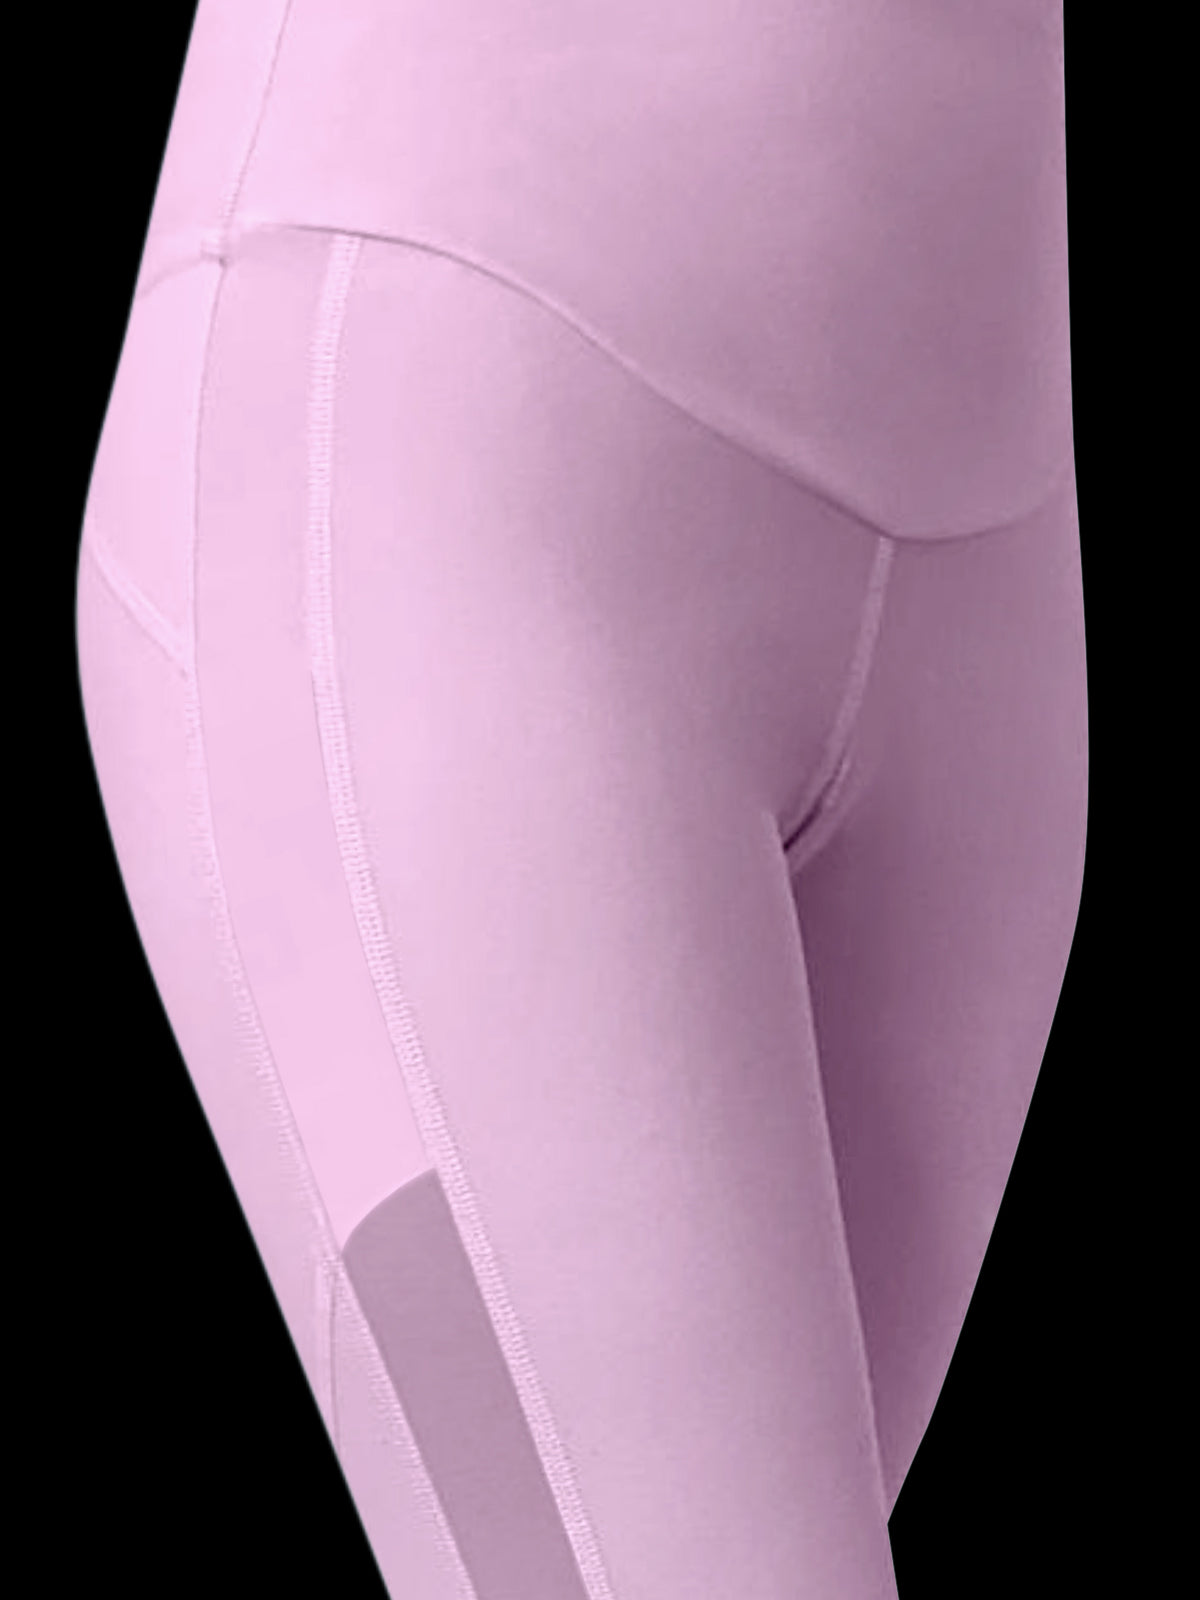 pink legging detail